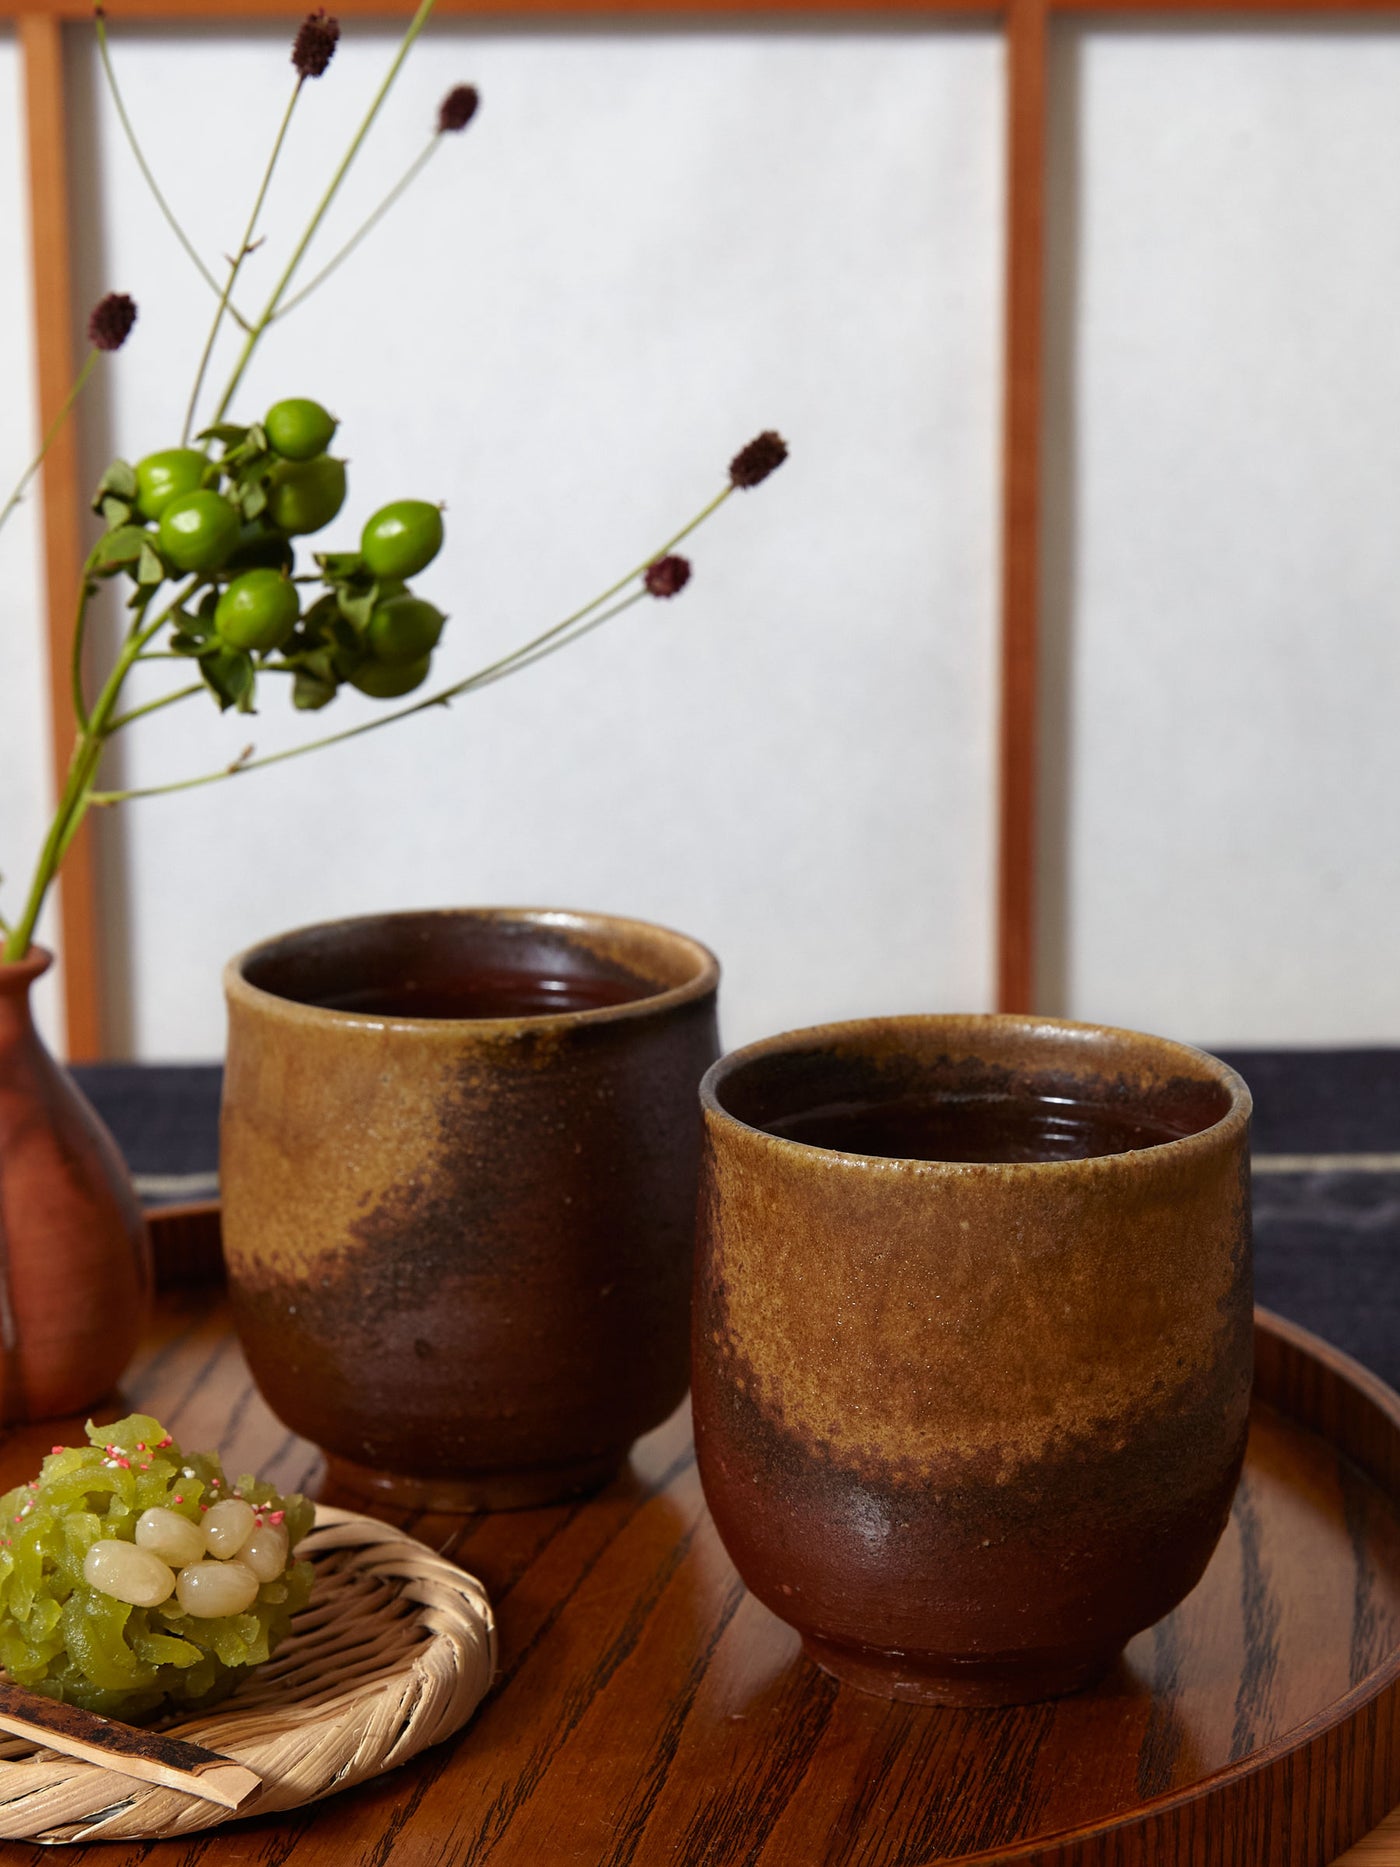 Goma Bizen Ware Yunomi Teacup Set by Hozan (7½ fl.oz/220ml)